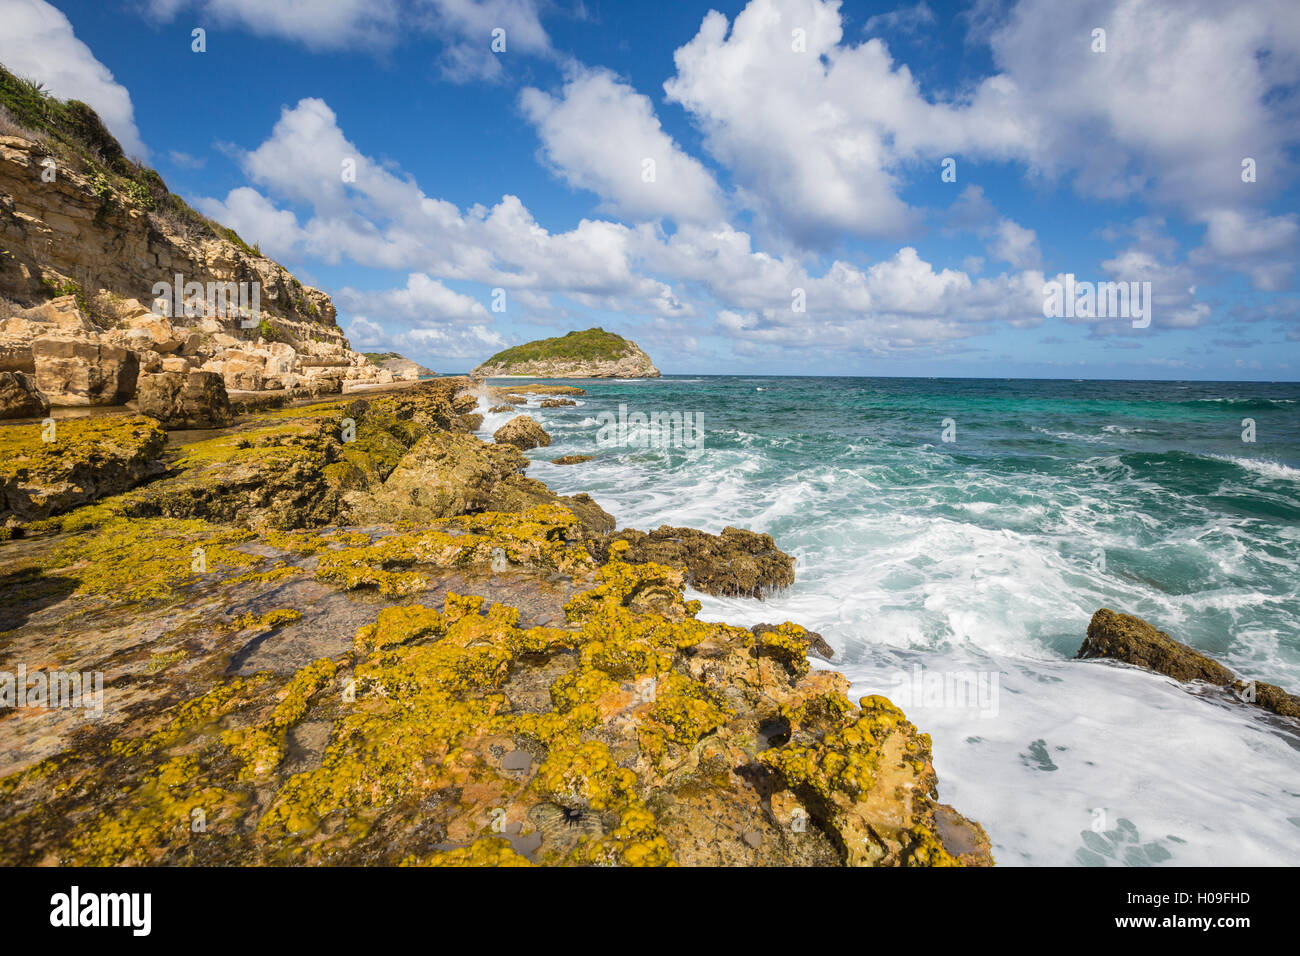 Les vagues de la mer des Caraïbes s'écraser sur les falaises, Half Moon Bay, Antigua-et-Barbuda, Antilles, îles sous le vent Banque D'Images